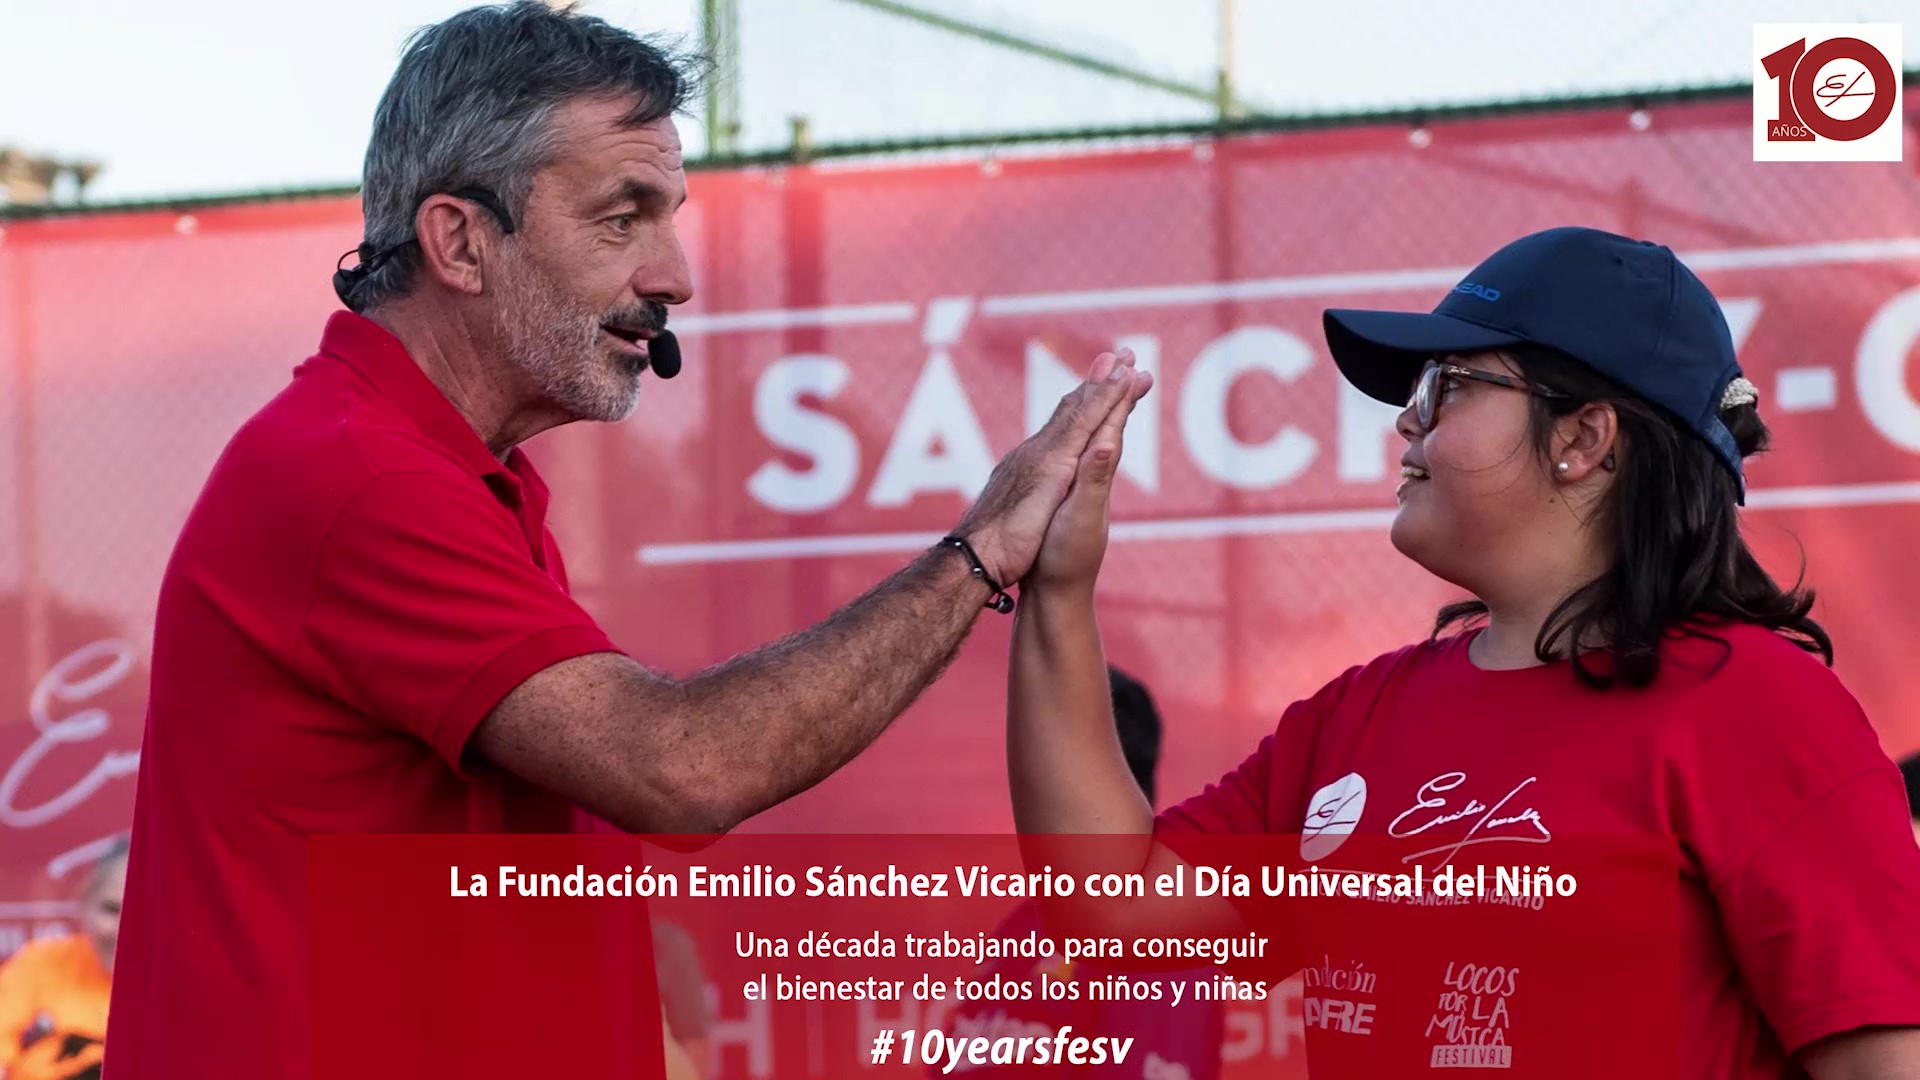 Image for La Fundación Emilio Sánchez Vicario, con el Dia Mundial del Niño.